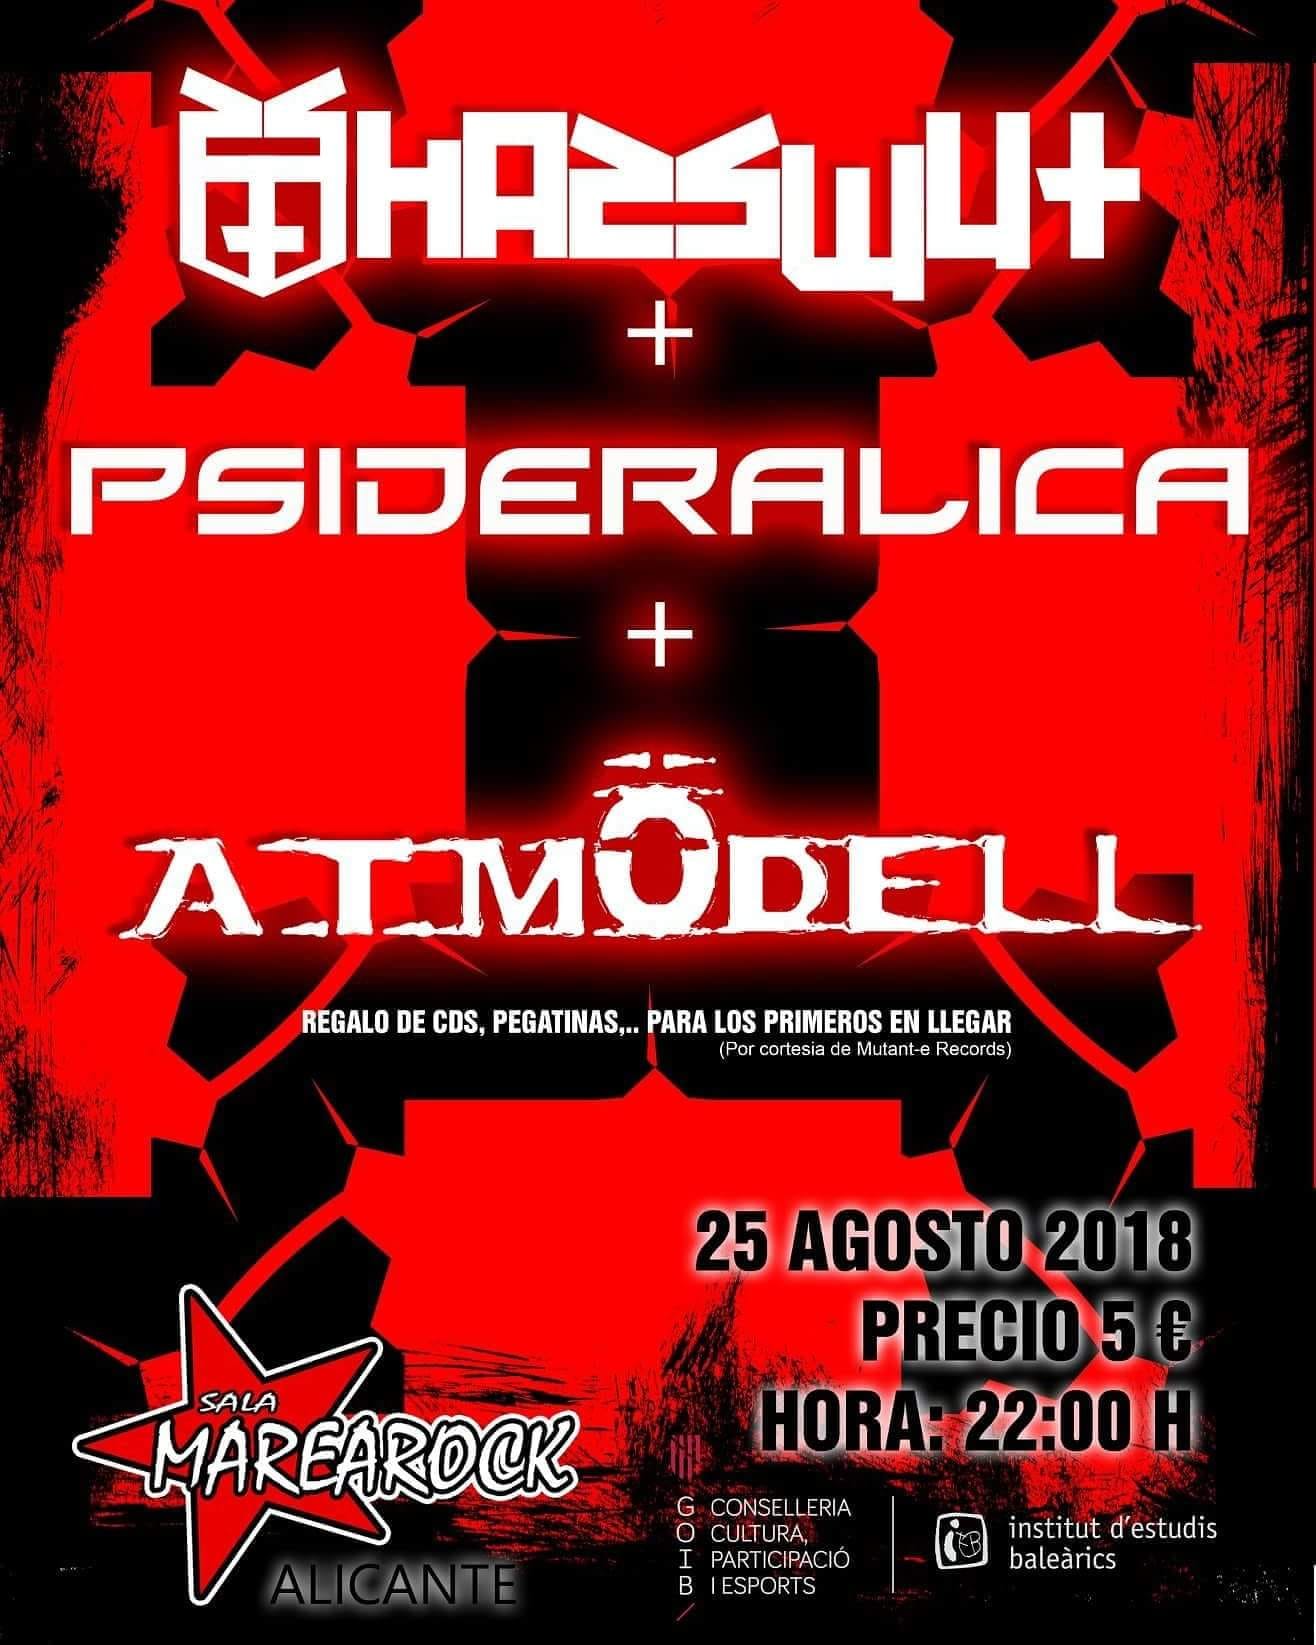 HASSWUT + PSIDERALICA + A.T. MÖDELL actuarán el 25 de agosto en Alicante